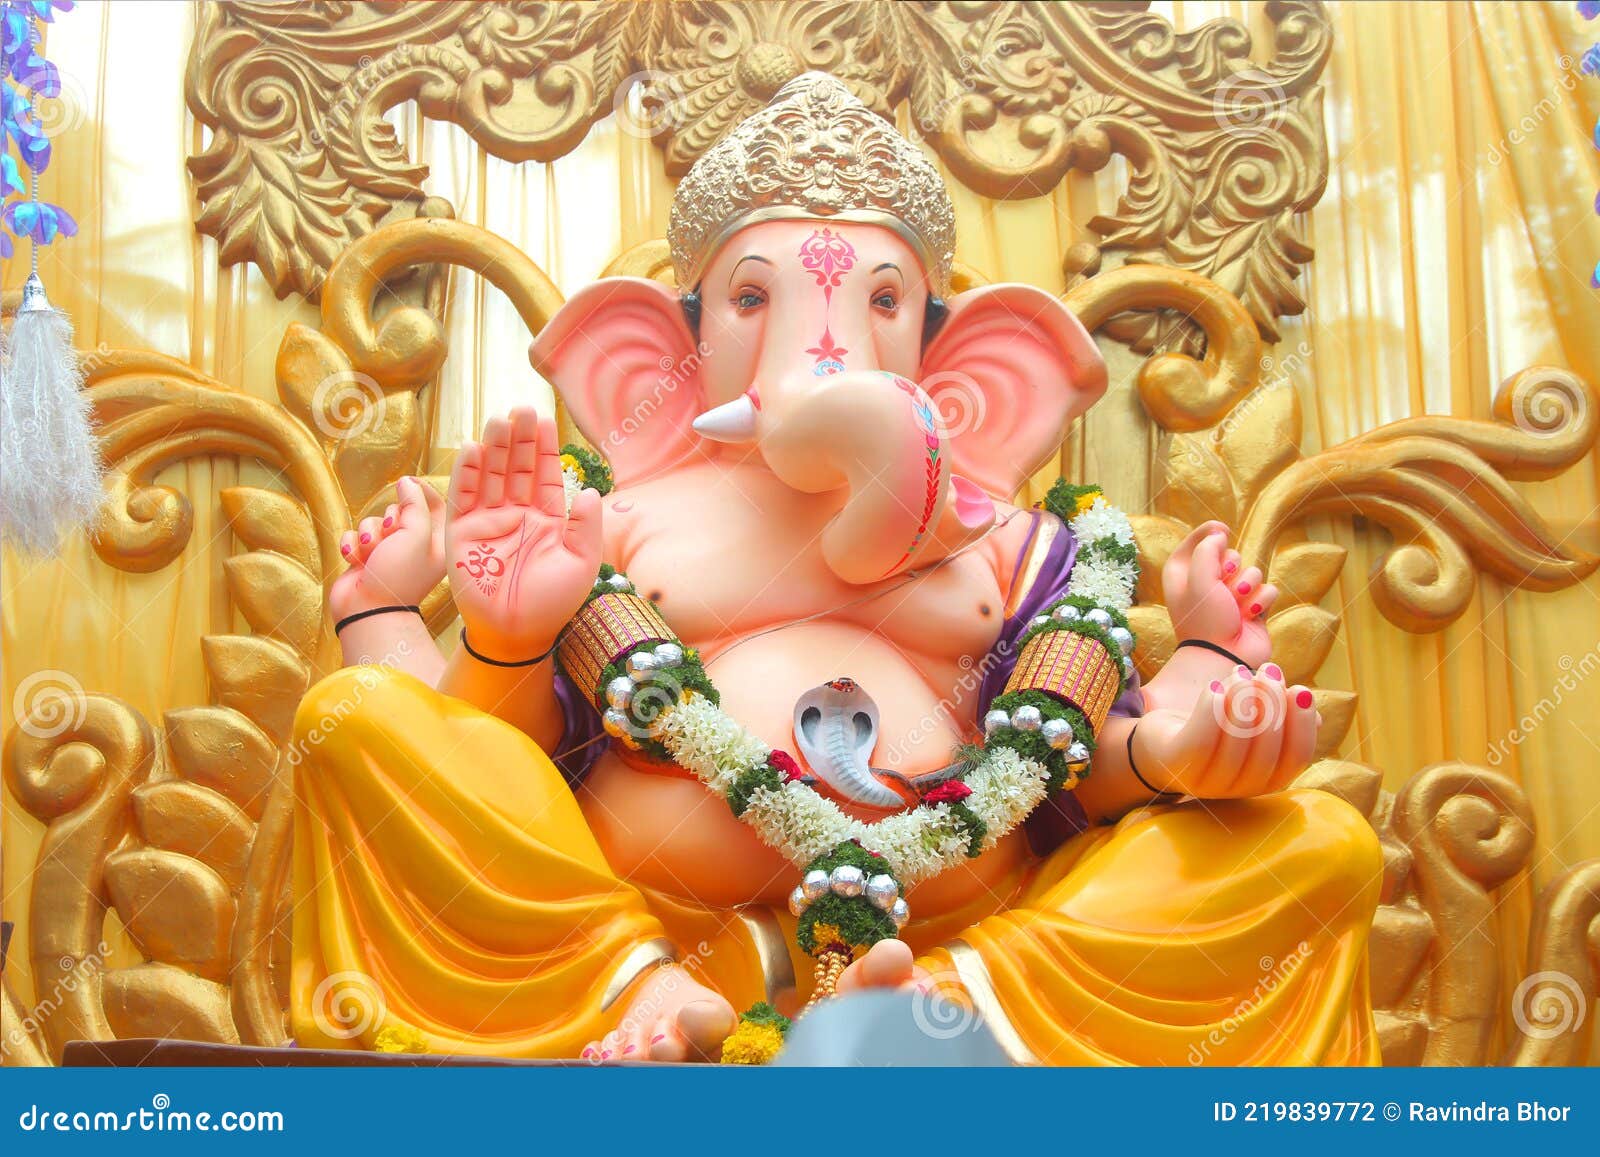 Ganesha Festival, Lord Ganesha in Pune City - Image 2021 Stock Photo ...